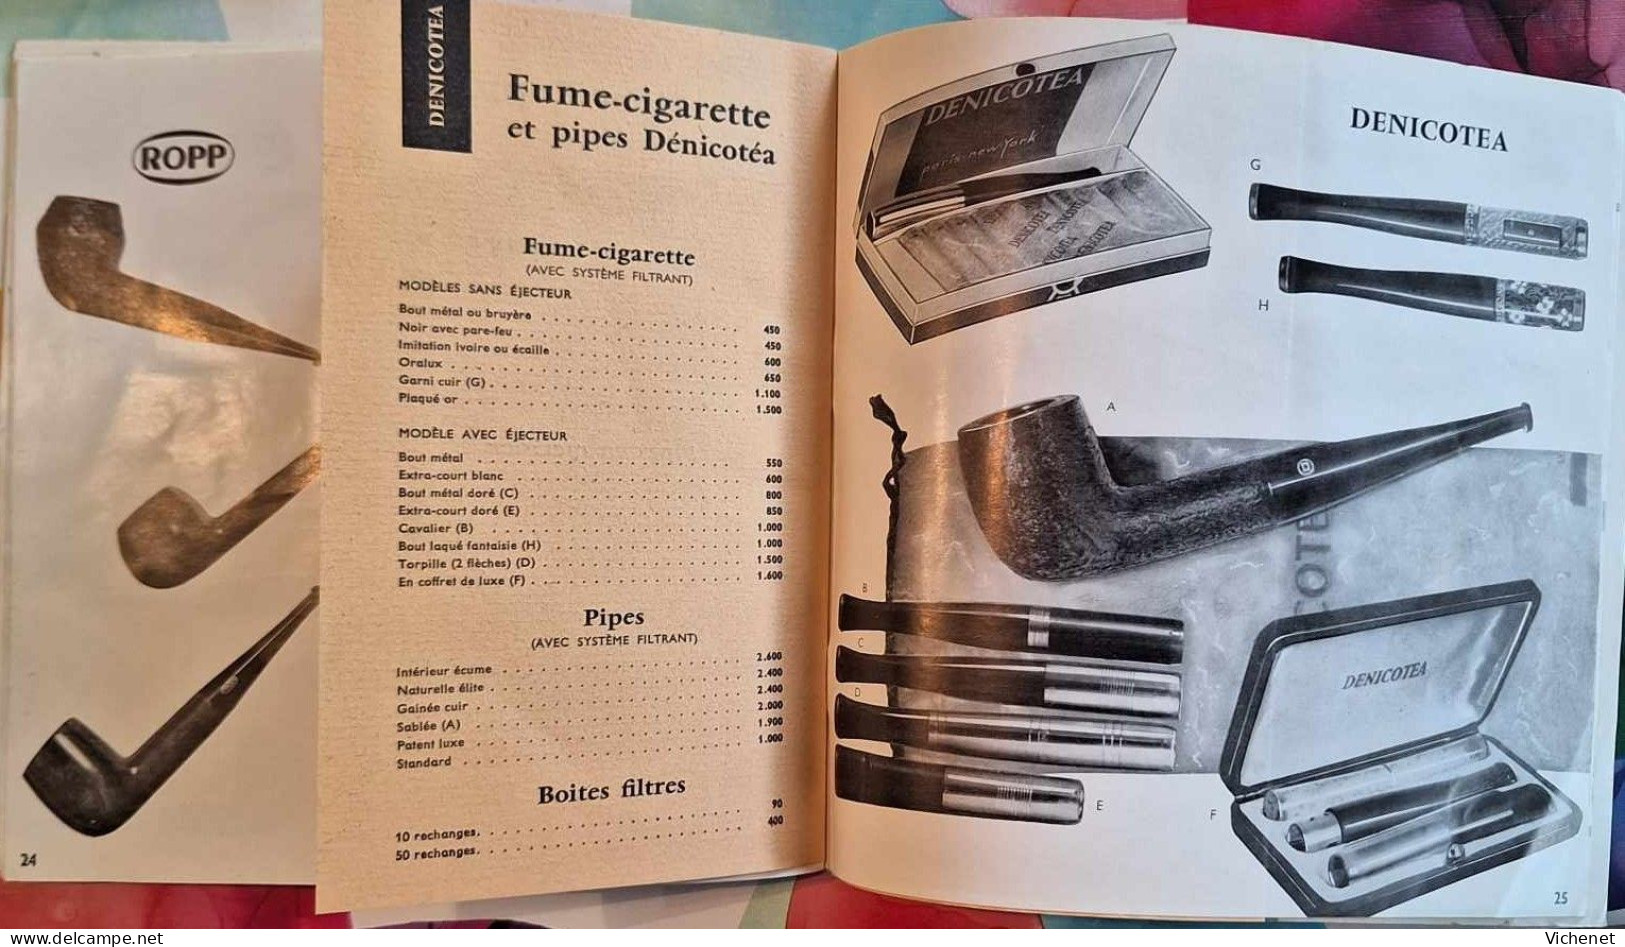 La Civette , rue Saint Honoré, Paris - Cadeaux et Tabacs de Luxe - Catalogue Publicitaire 1959 - 1960